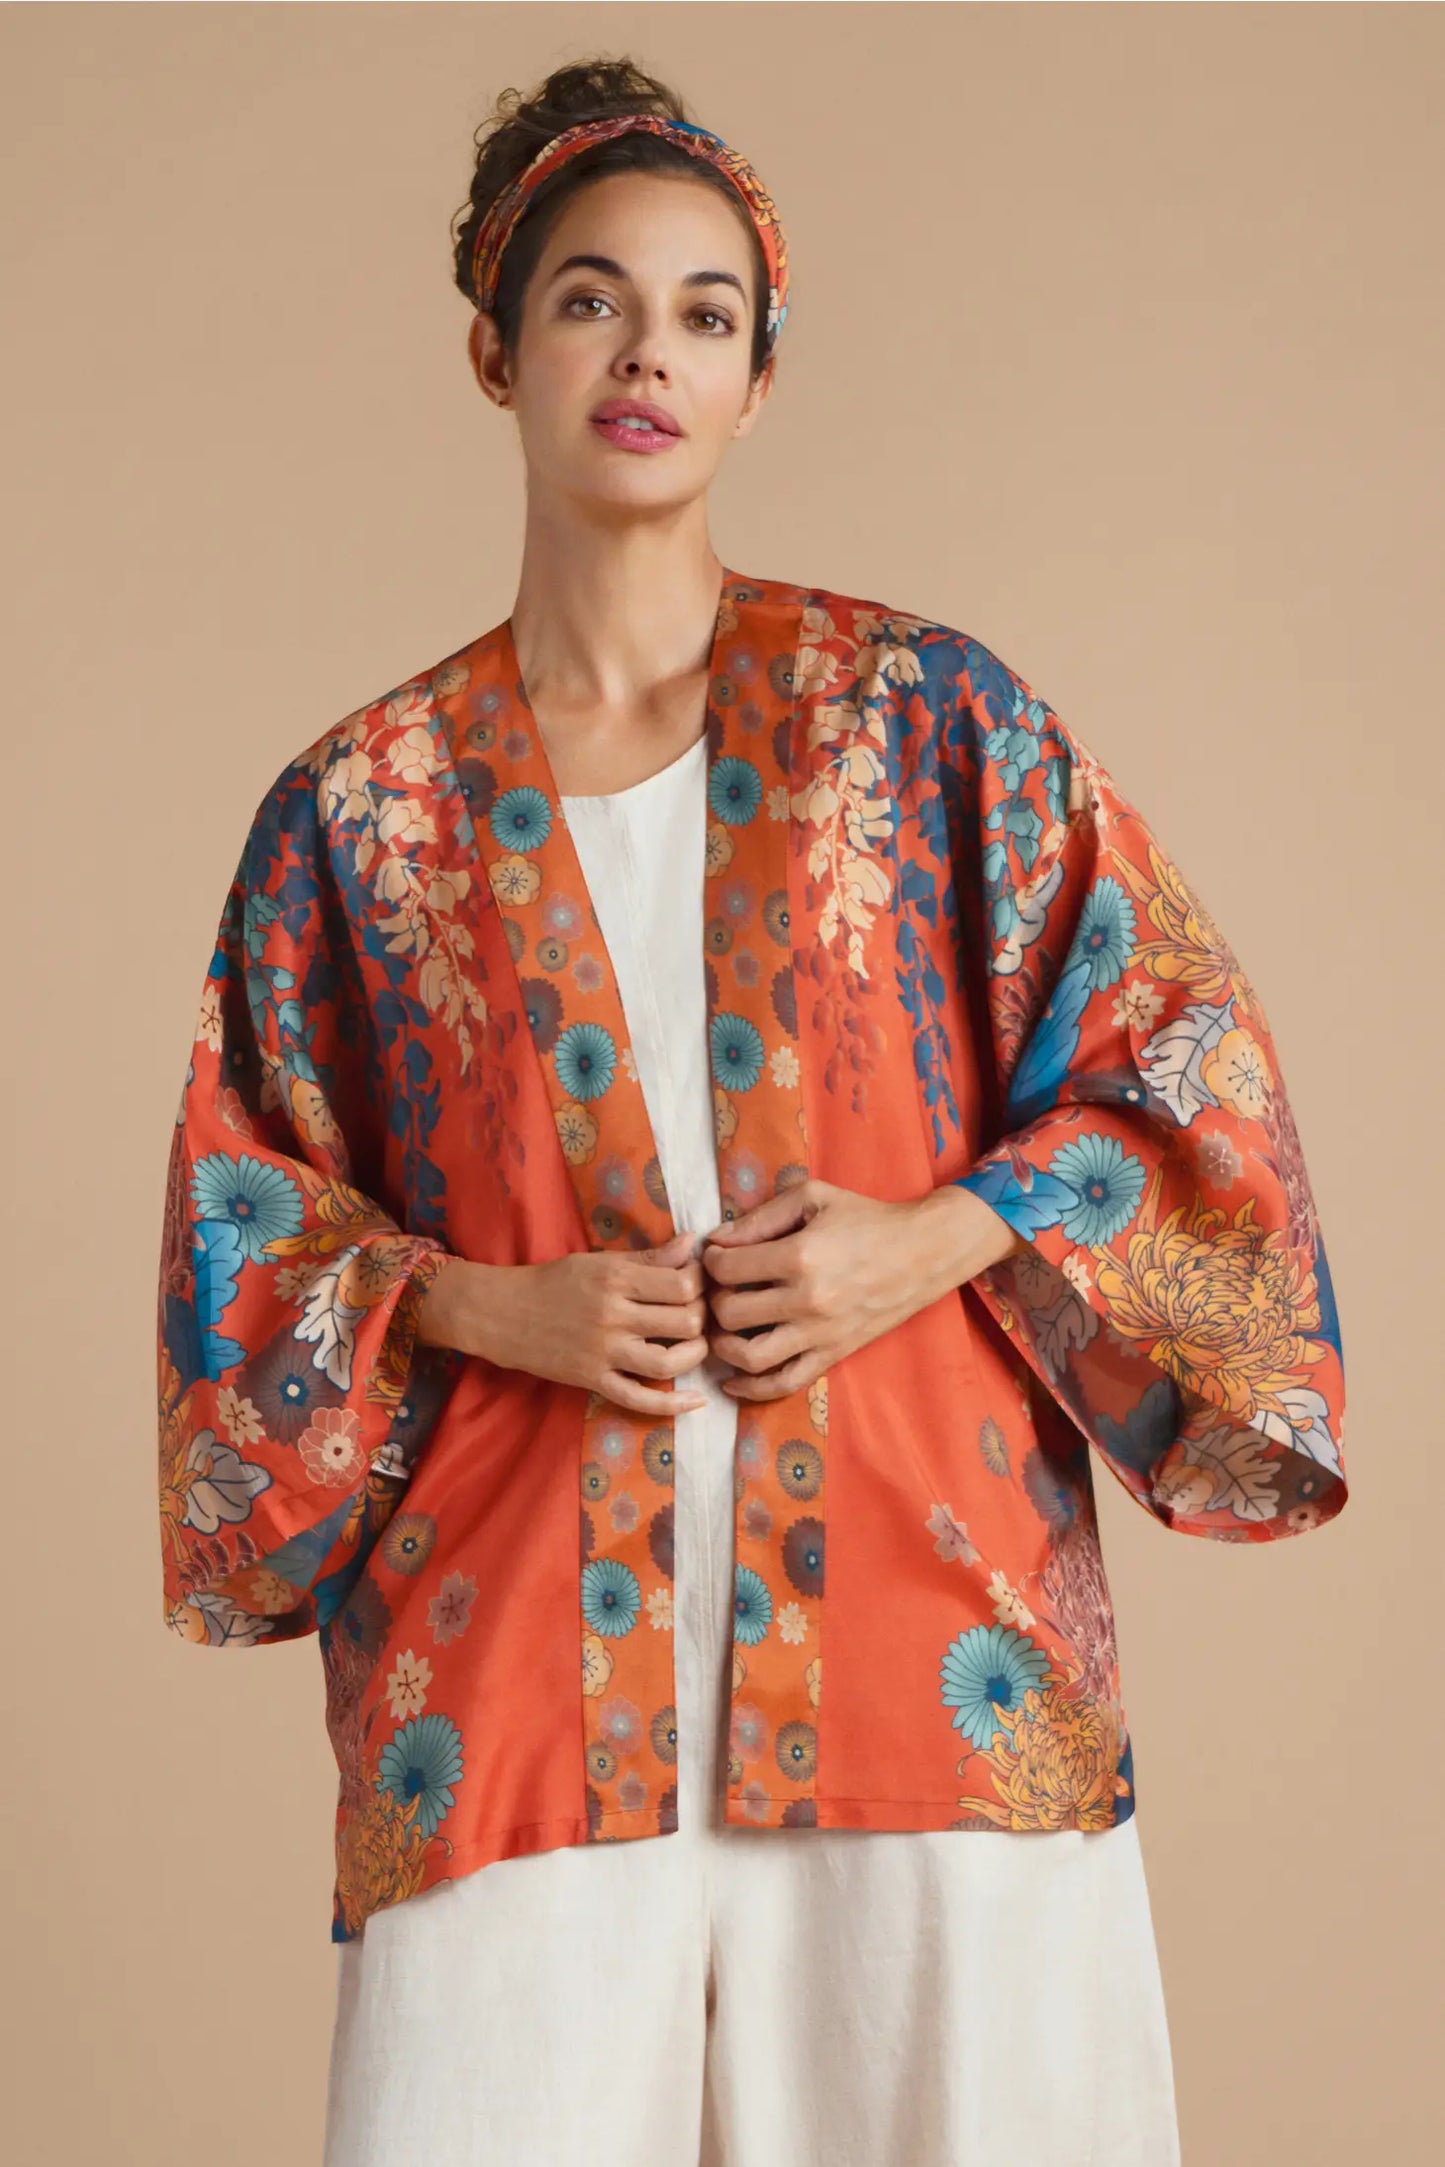 Kimono Jacket- Trailing Wisteria Kimono Jacket - Terracotta